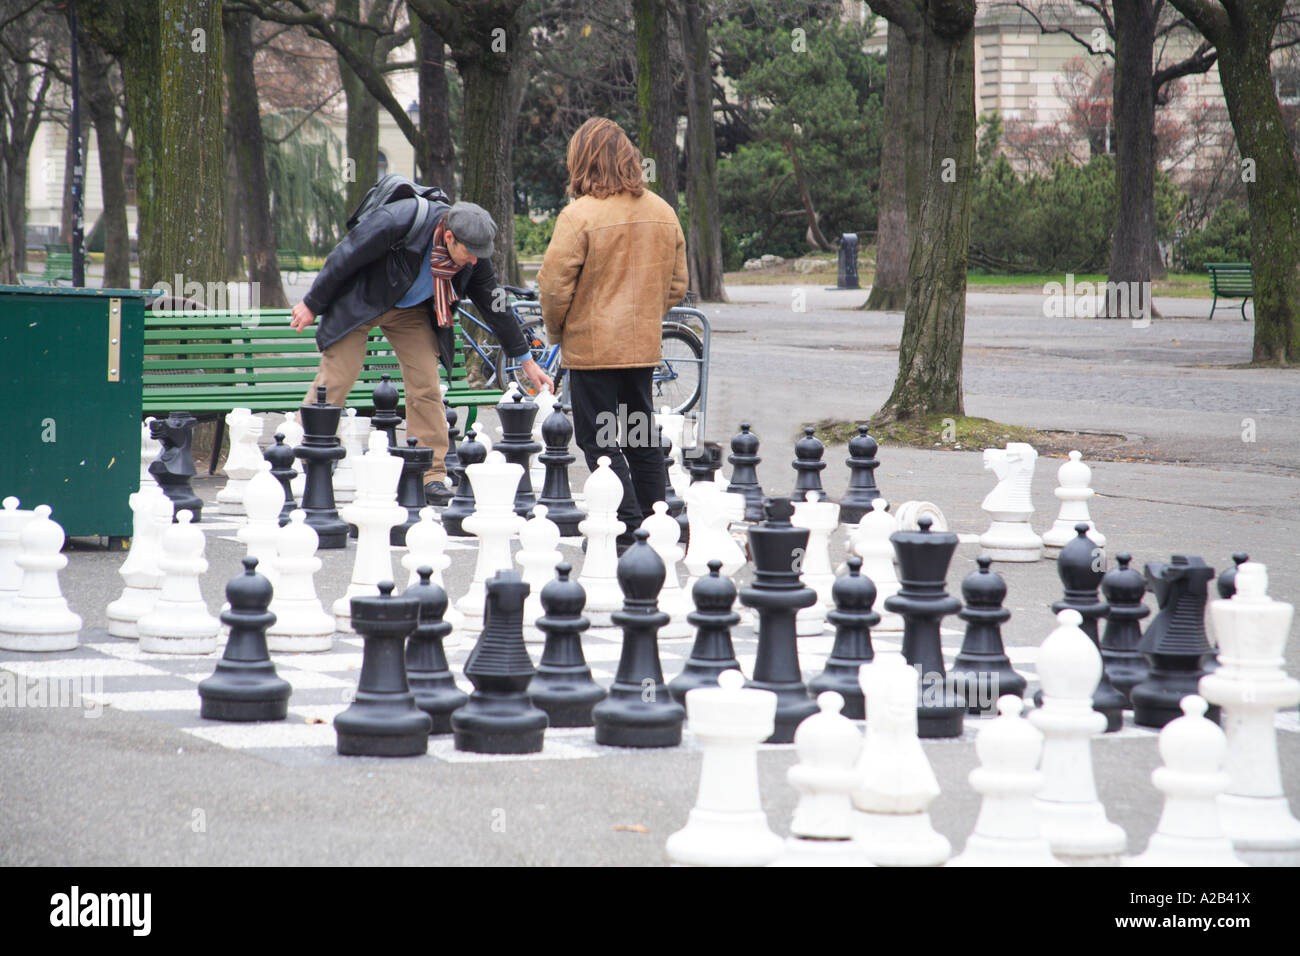 Genf-Schweiz-Riesen-Schach Spiel Park Parc des Bastions Freizeit Männer  spielen Stockfotografie - Alamy